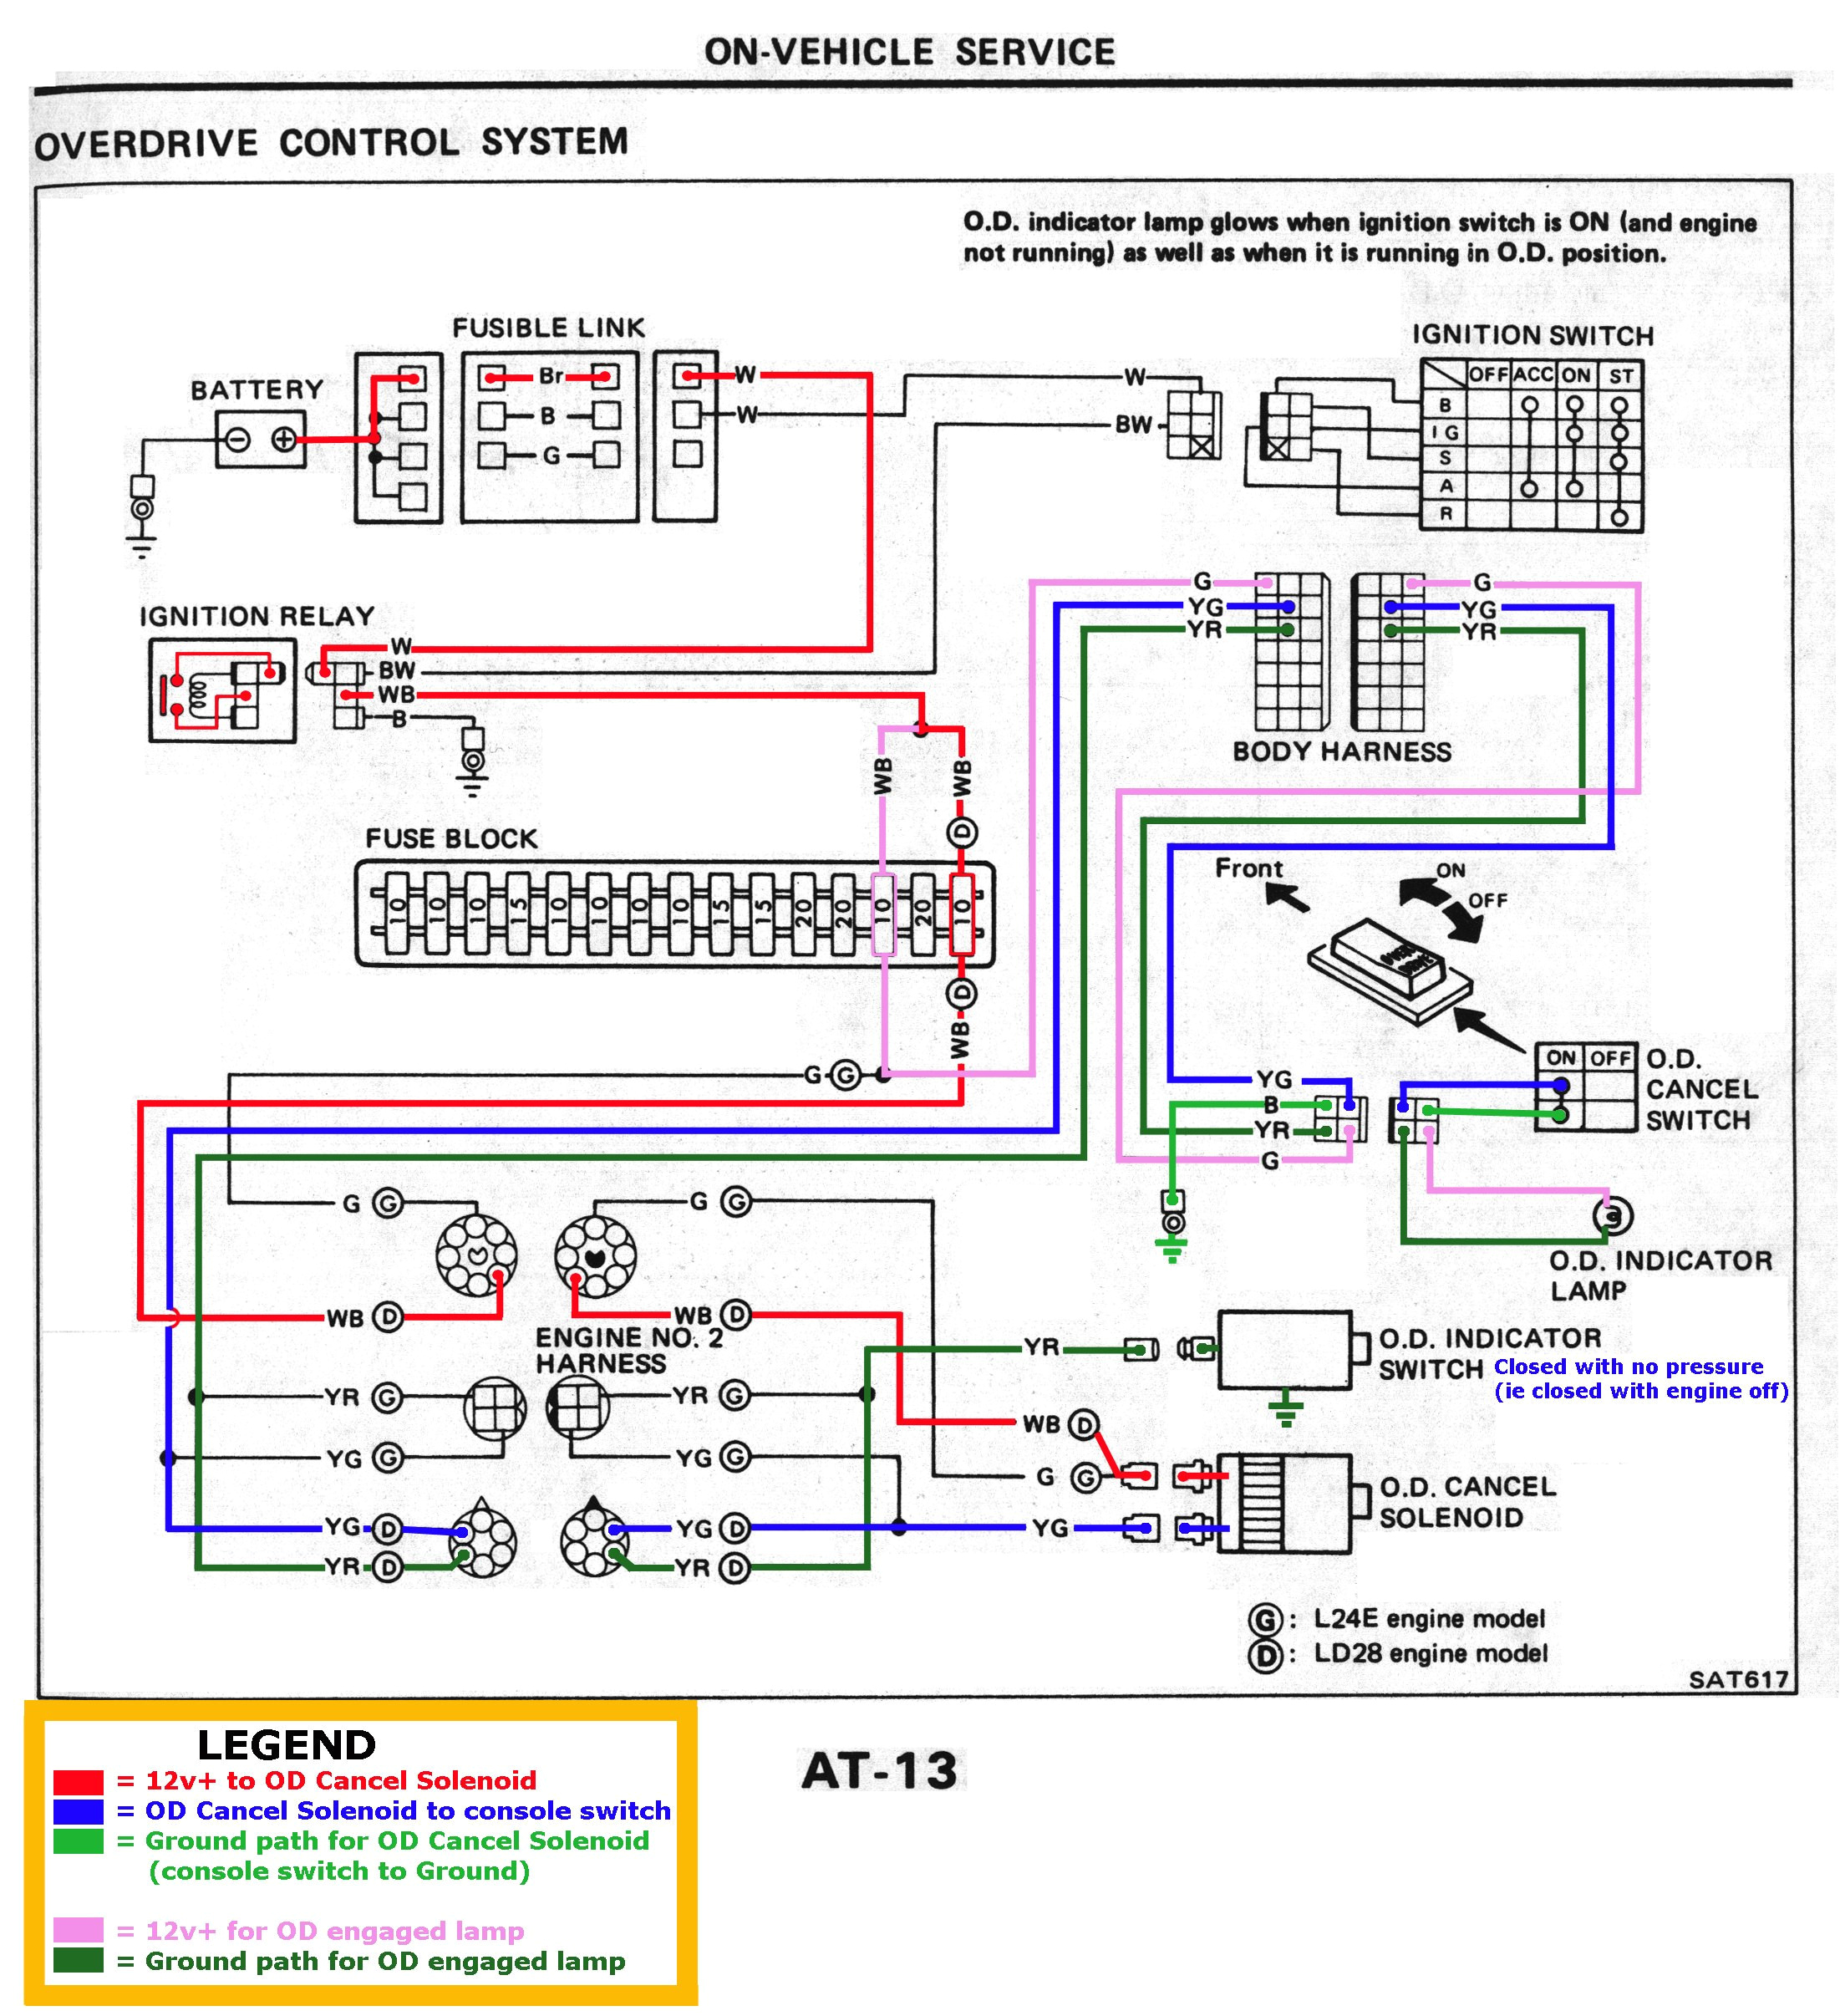 nissan pickup wiring diagram free download schematic wiring nissan terrano wiring diagram free download